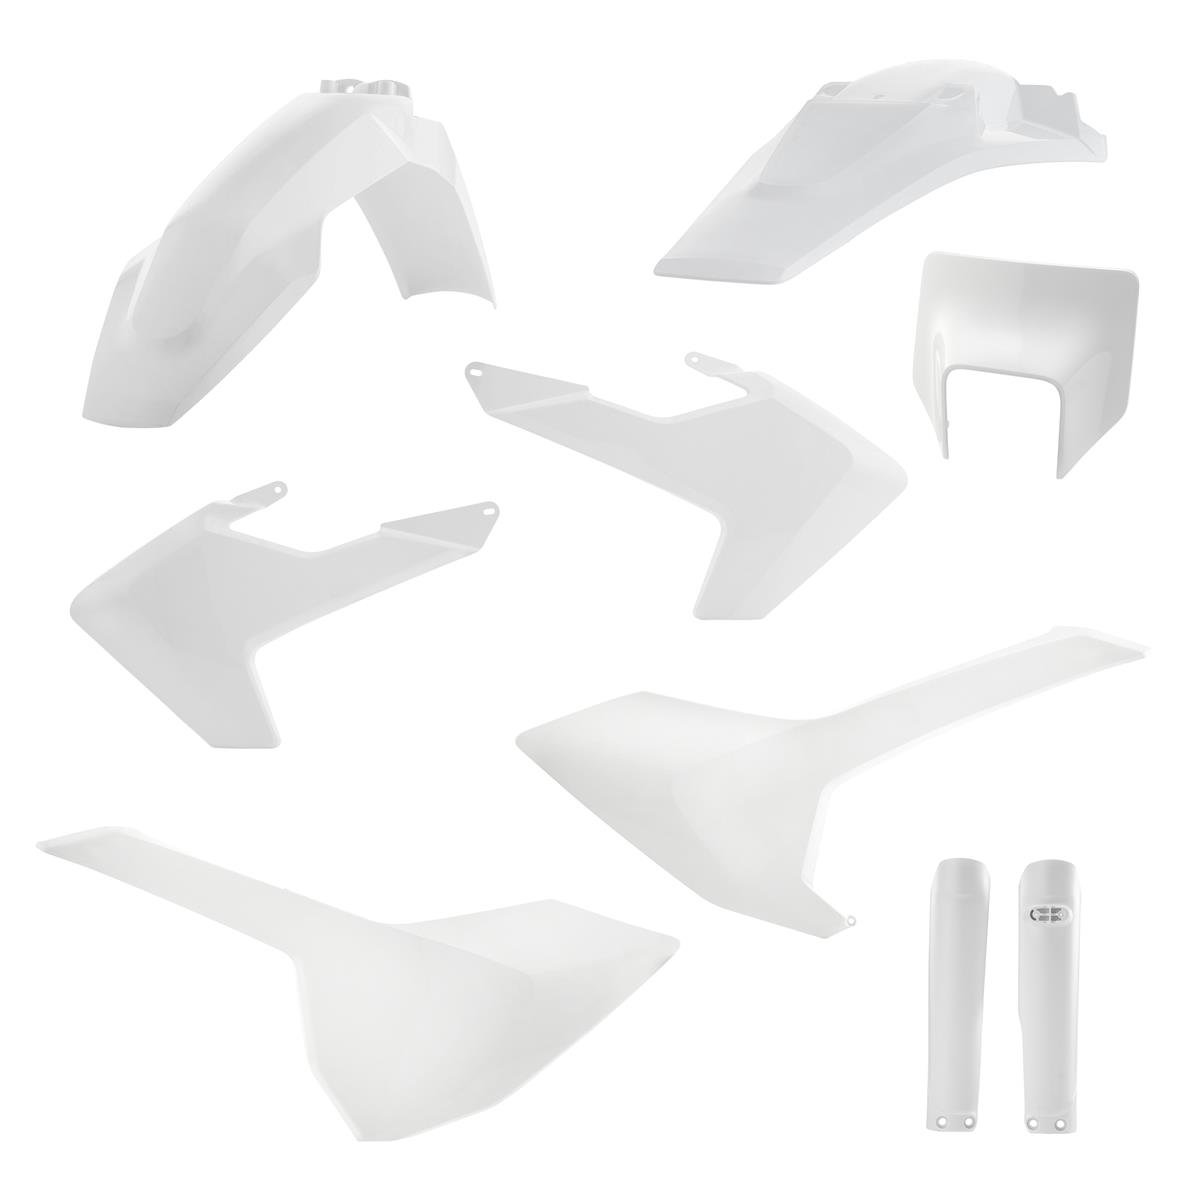 Acerbis Plastic Kit Full-Kit Husqvarna FE/TE/TX 17-19, White